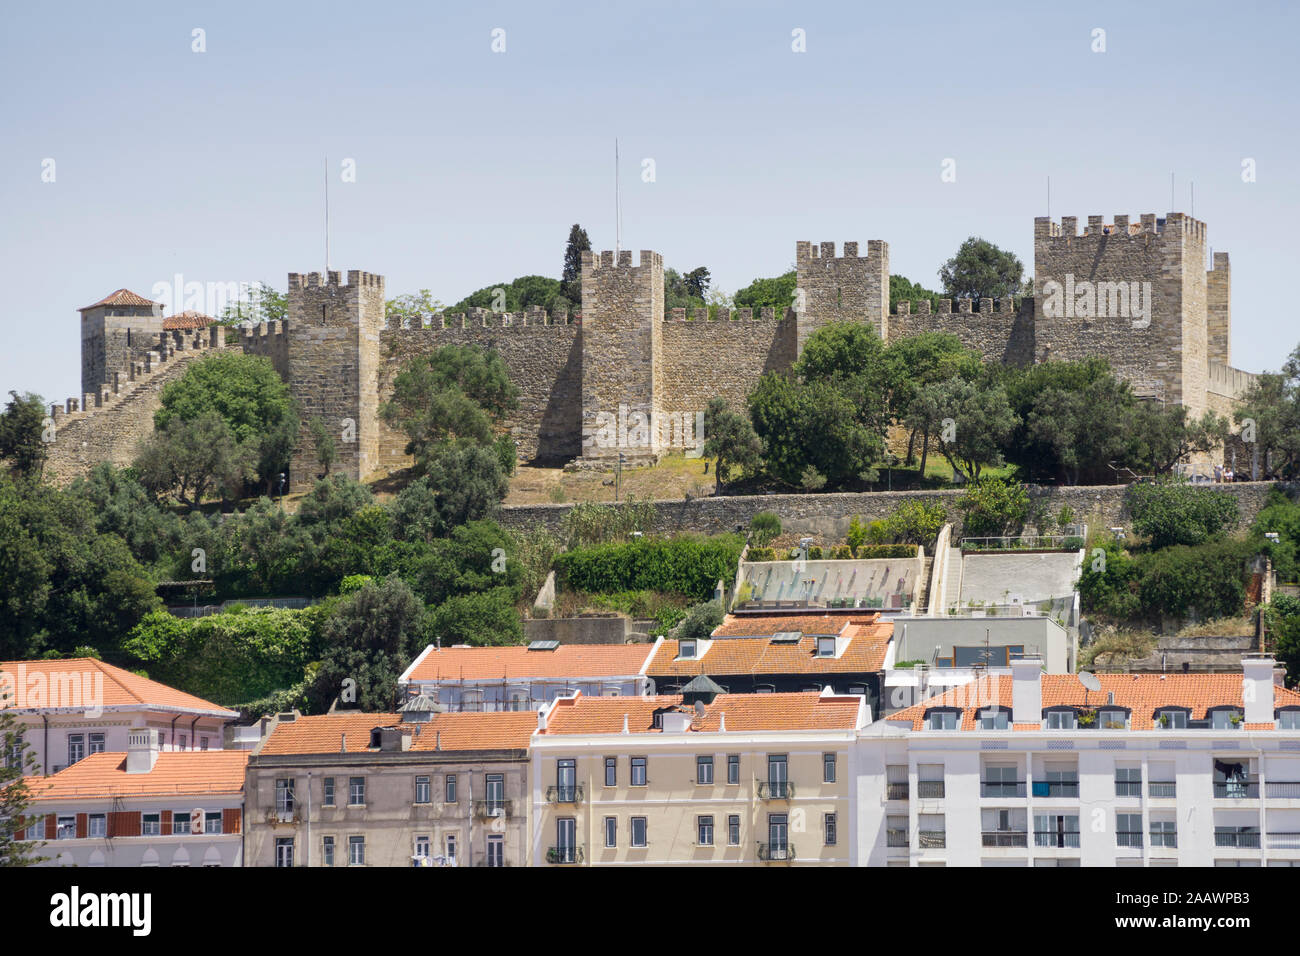 Castelo Sao Jorge and buildings against clear sky, Lisbon, Portugal Stock Photo